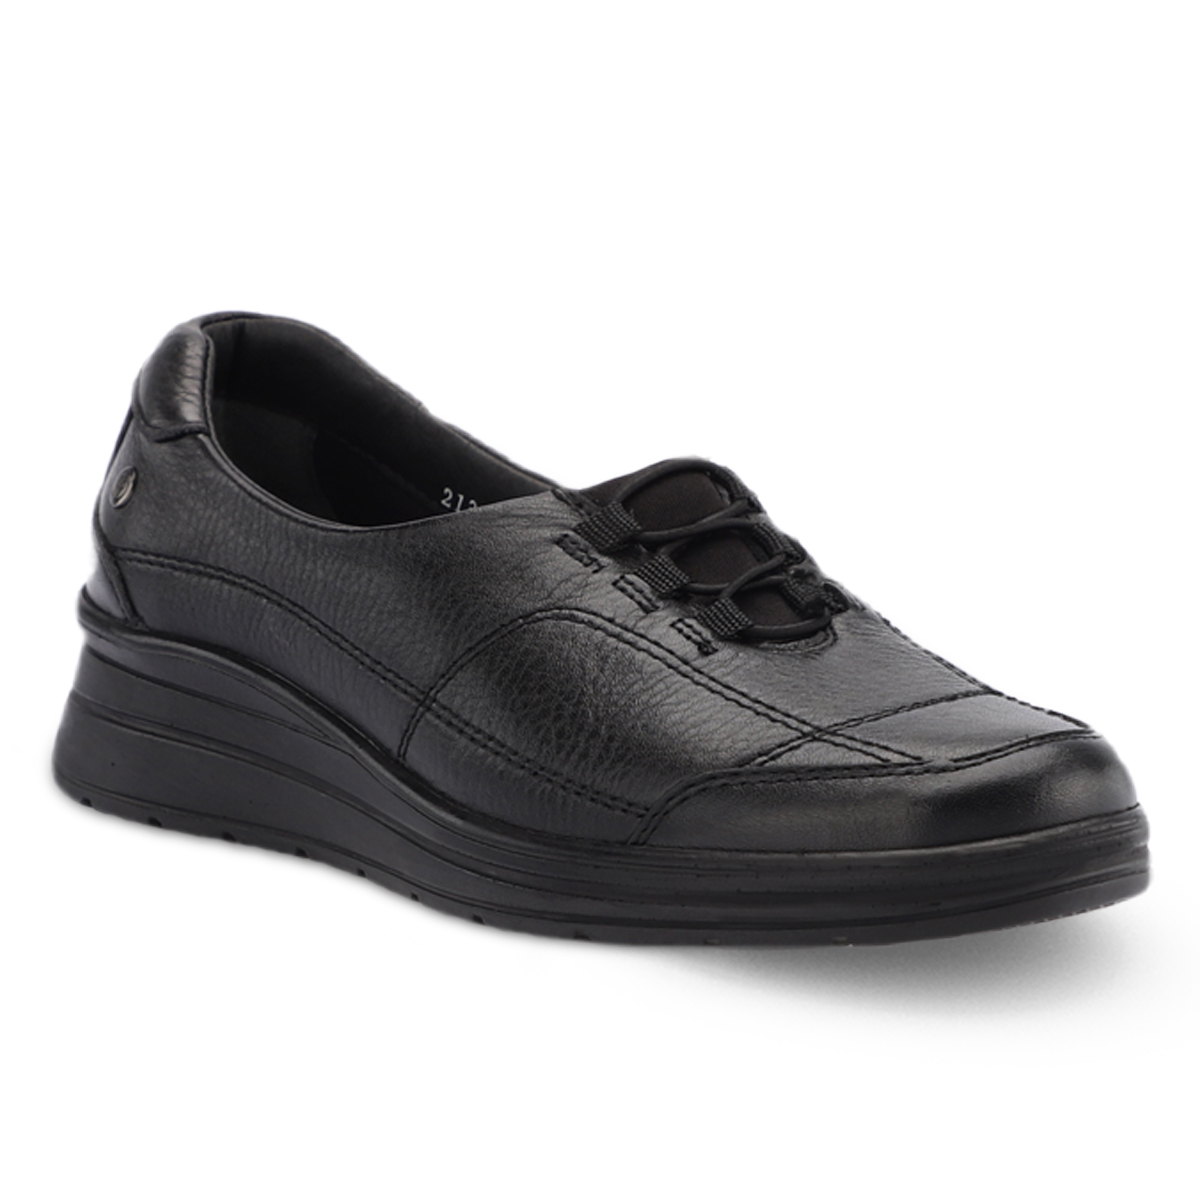 Forelli - Forelli HEFA-H Comfort Kadın Ayakkabı Siyah